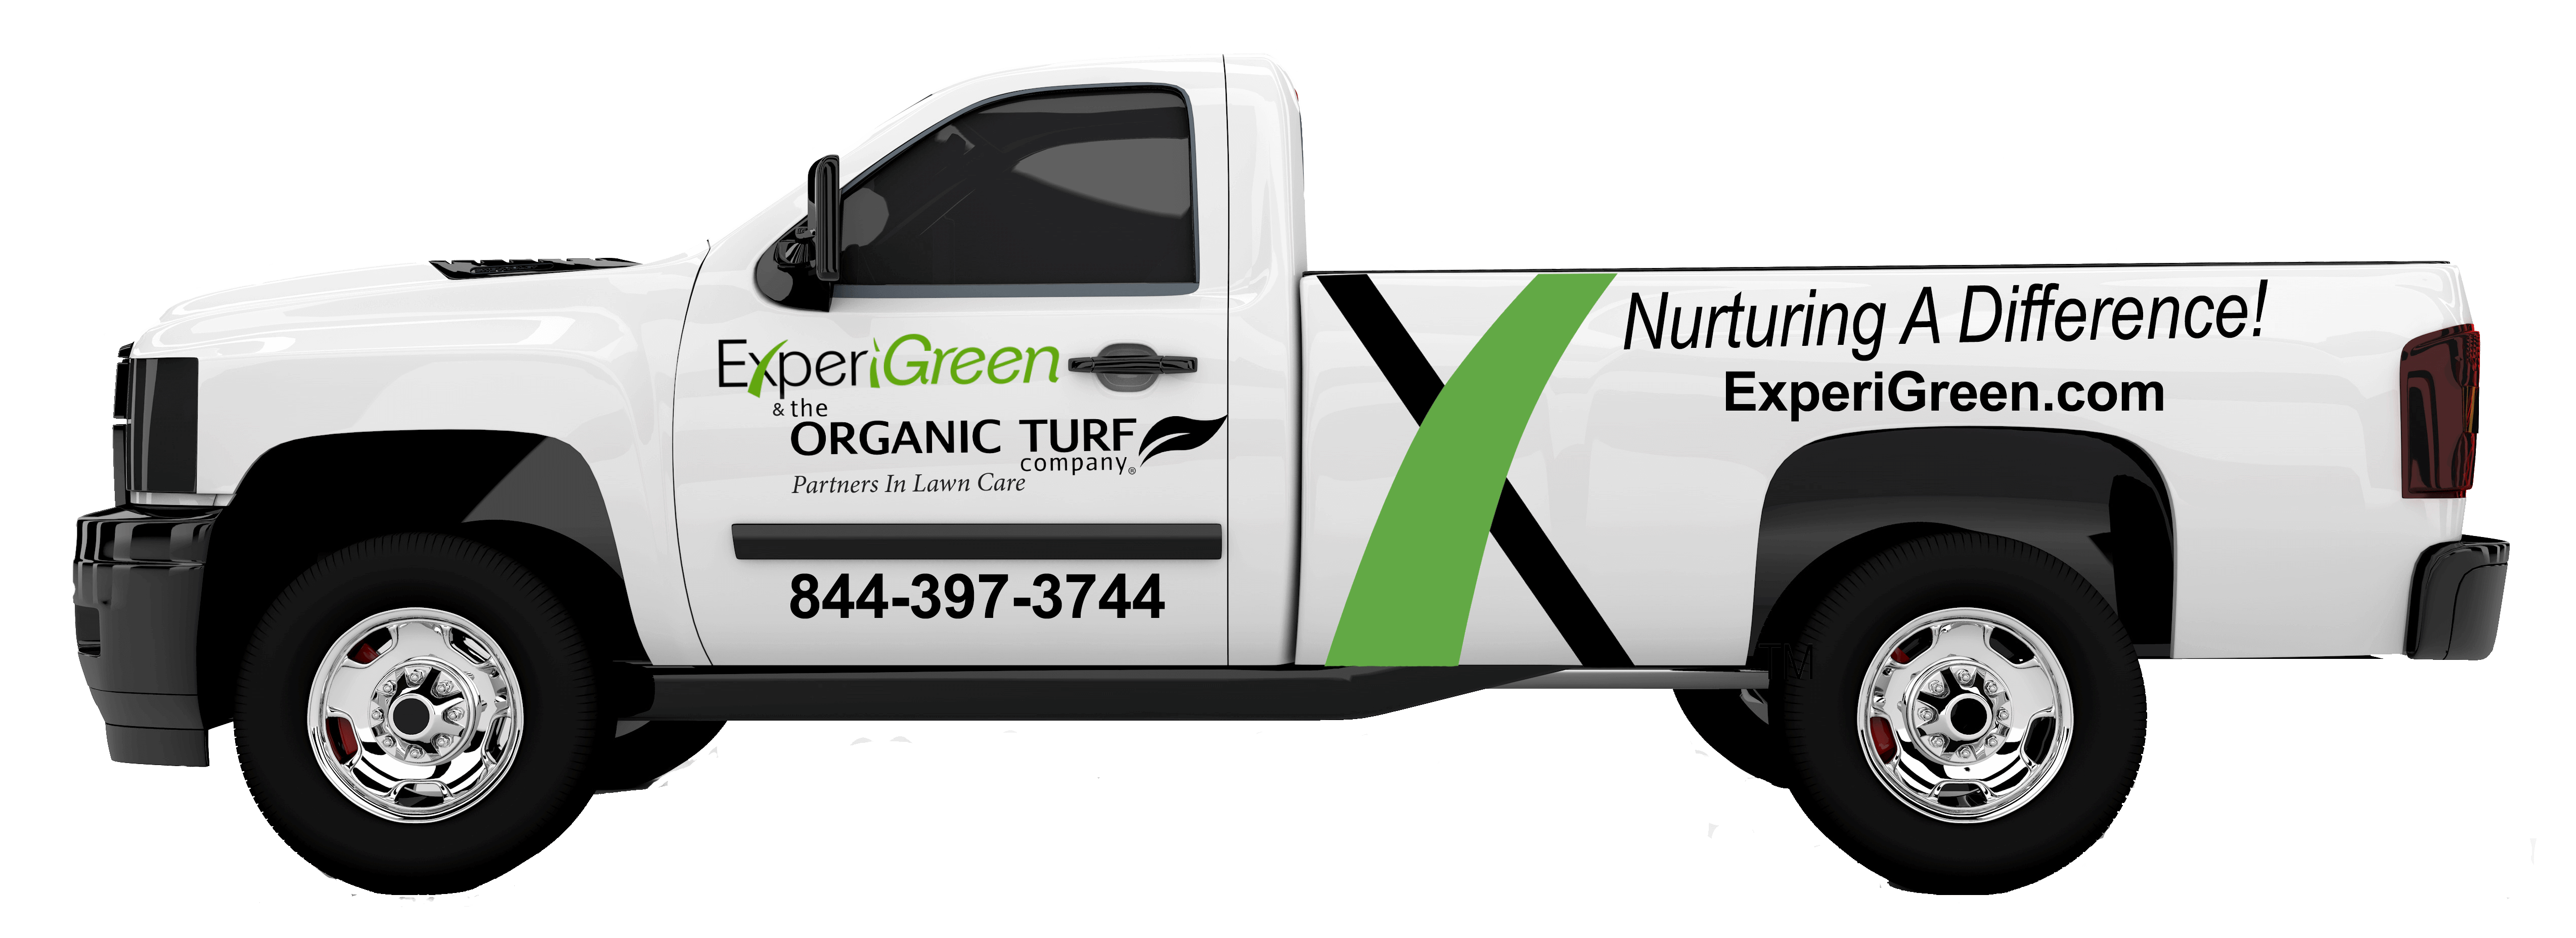 OTC & ExperiGreen Co-Branded Truck